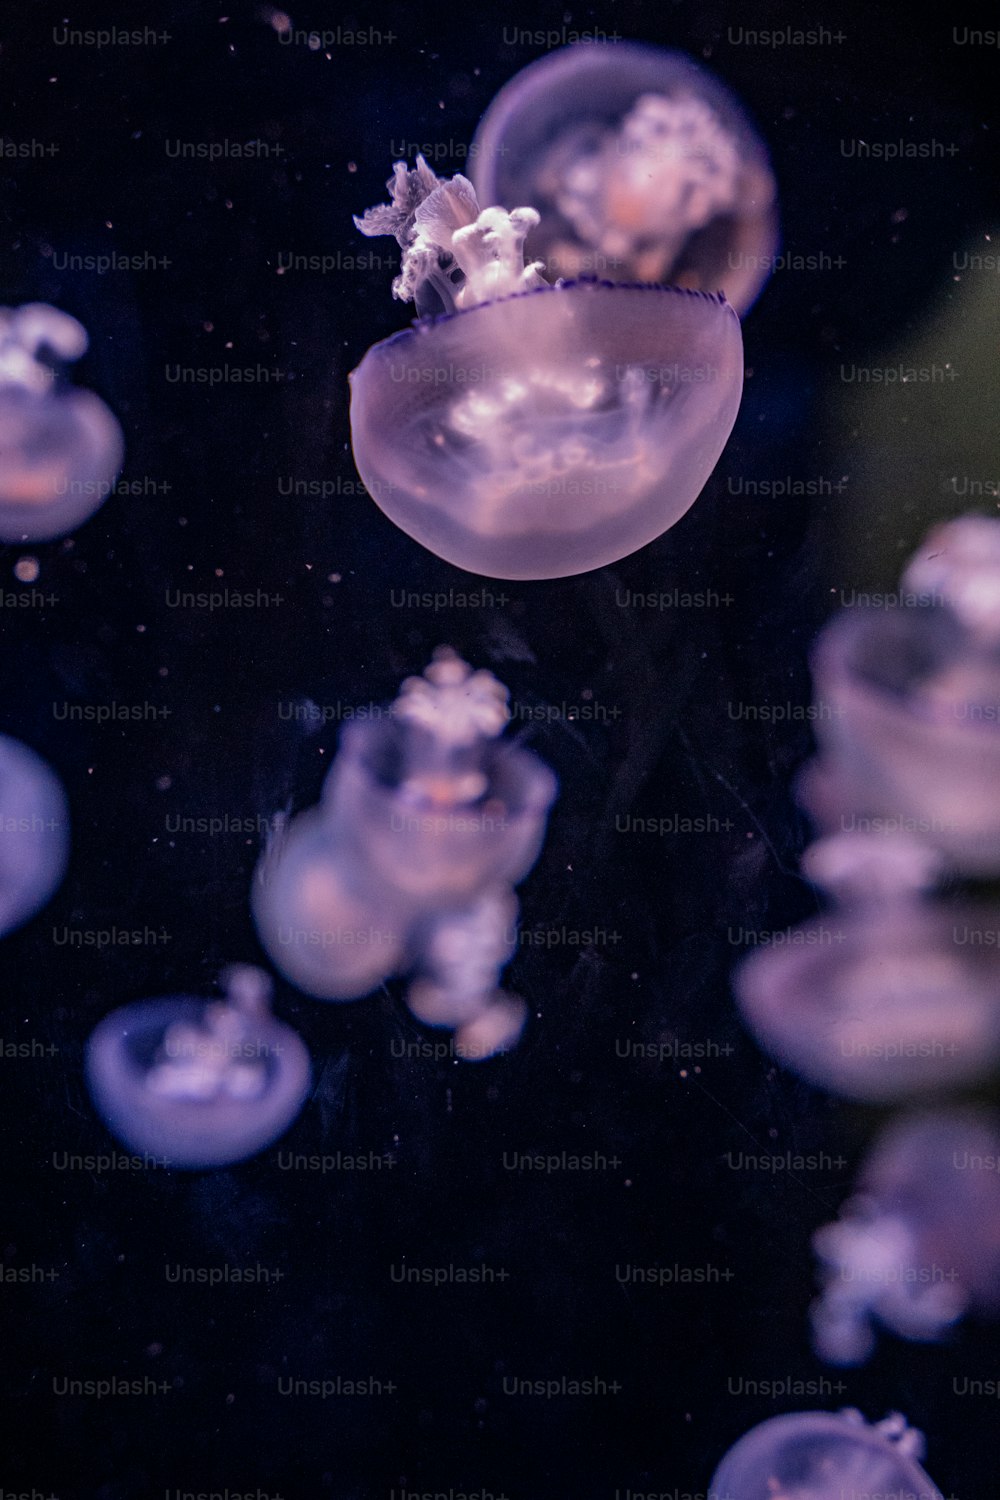 Un groupe de méduses flottant dans l’eau